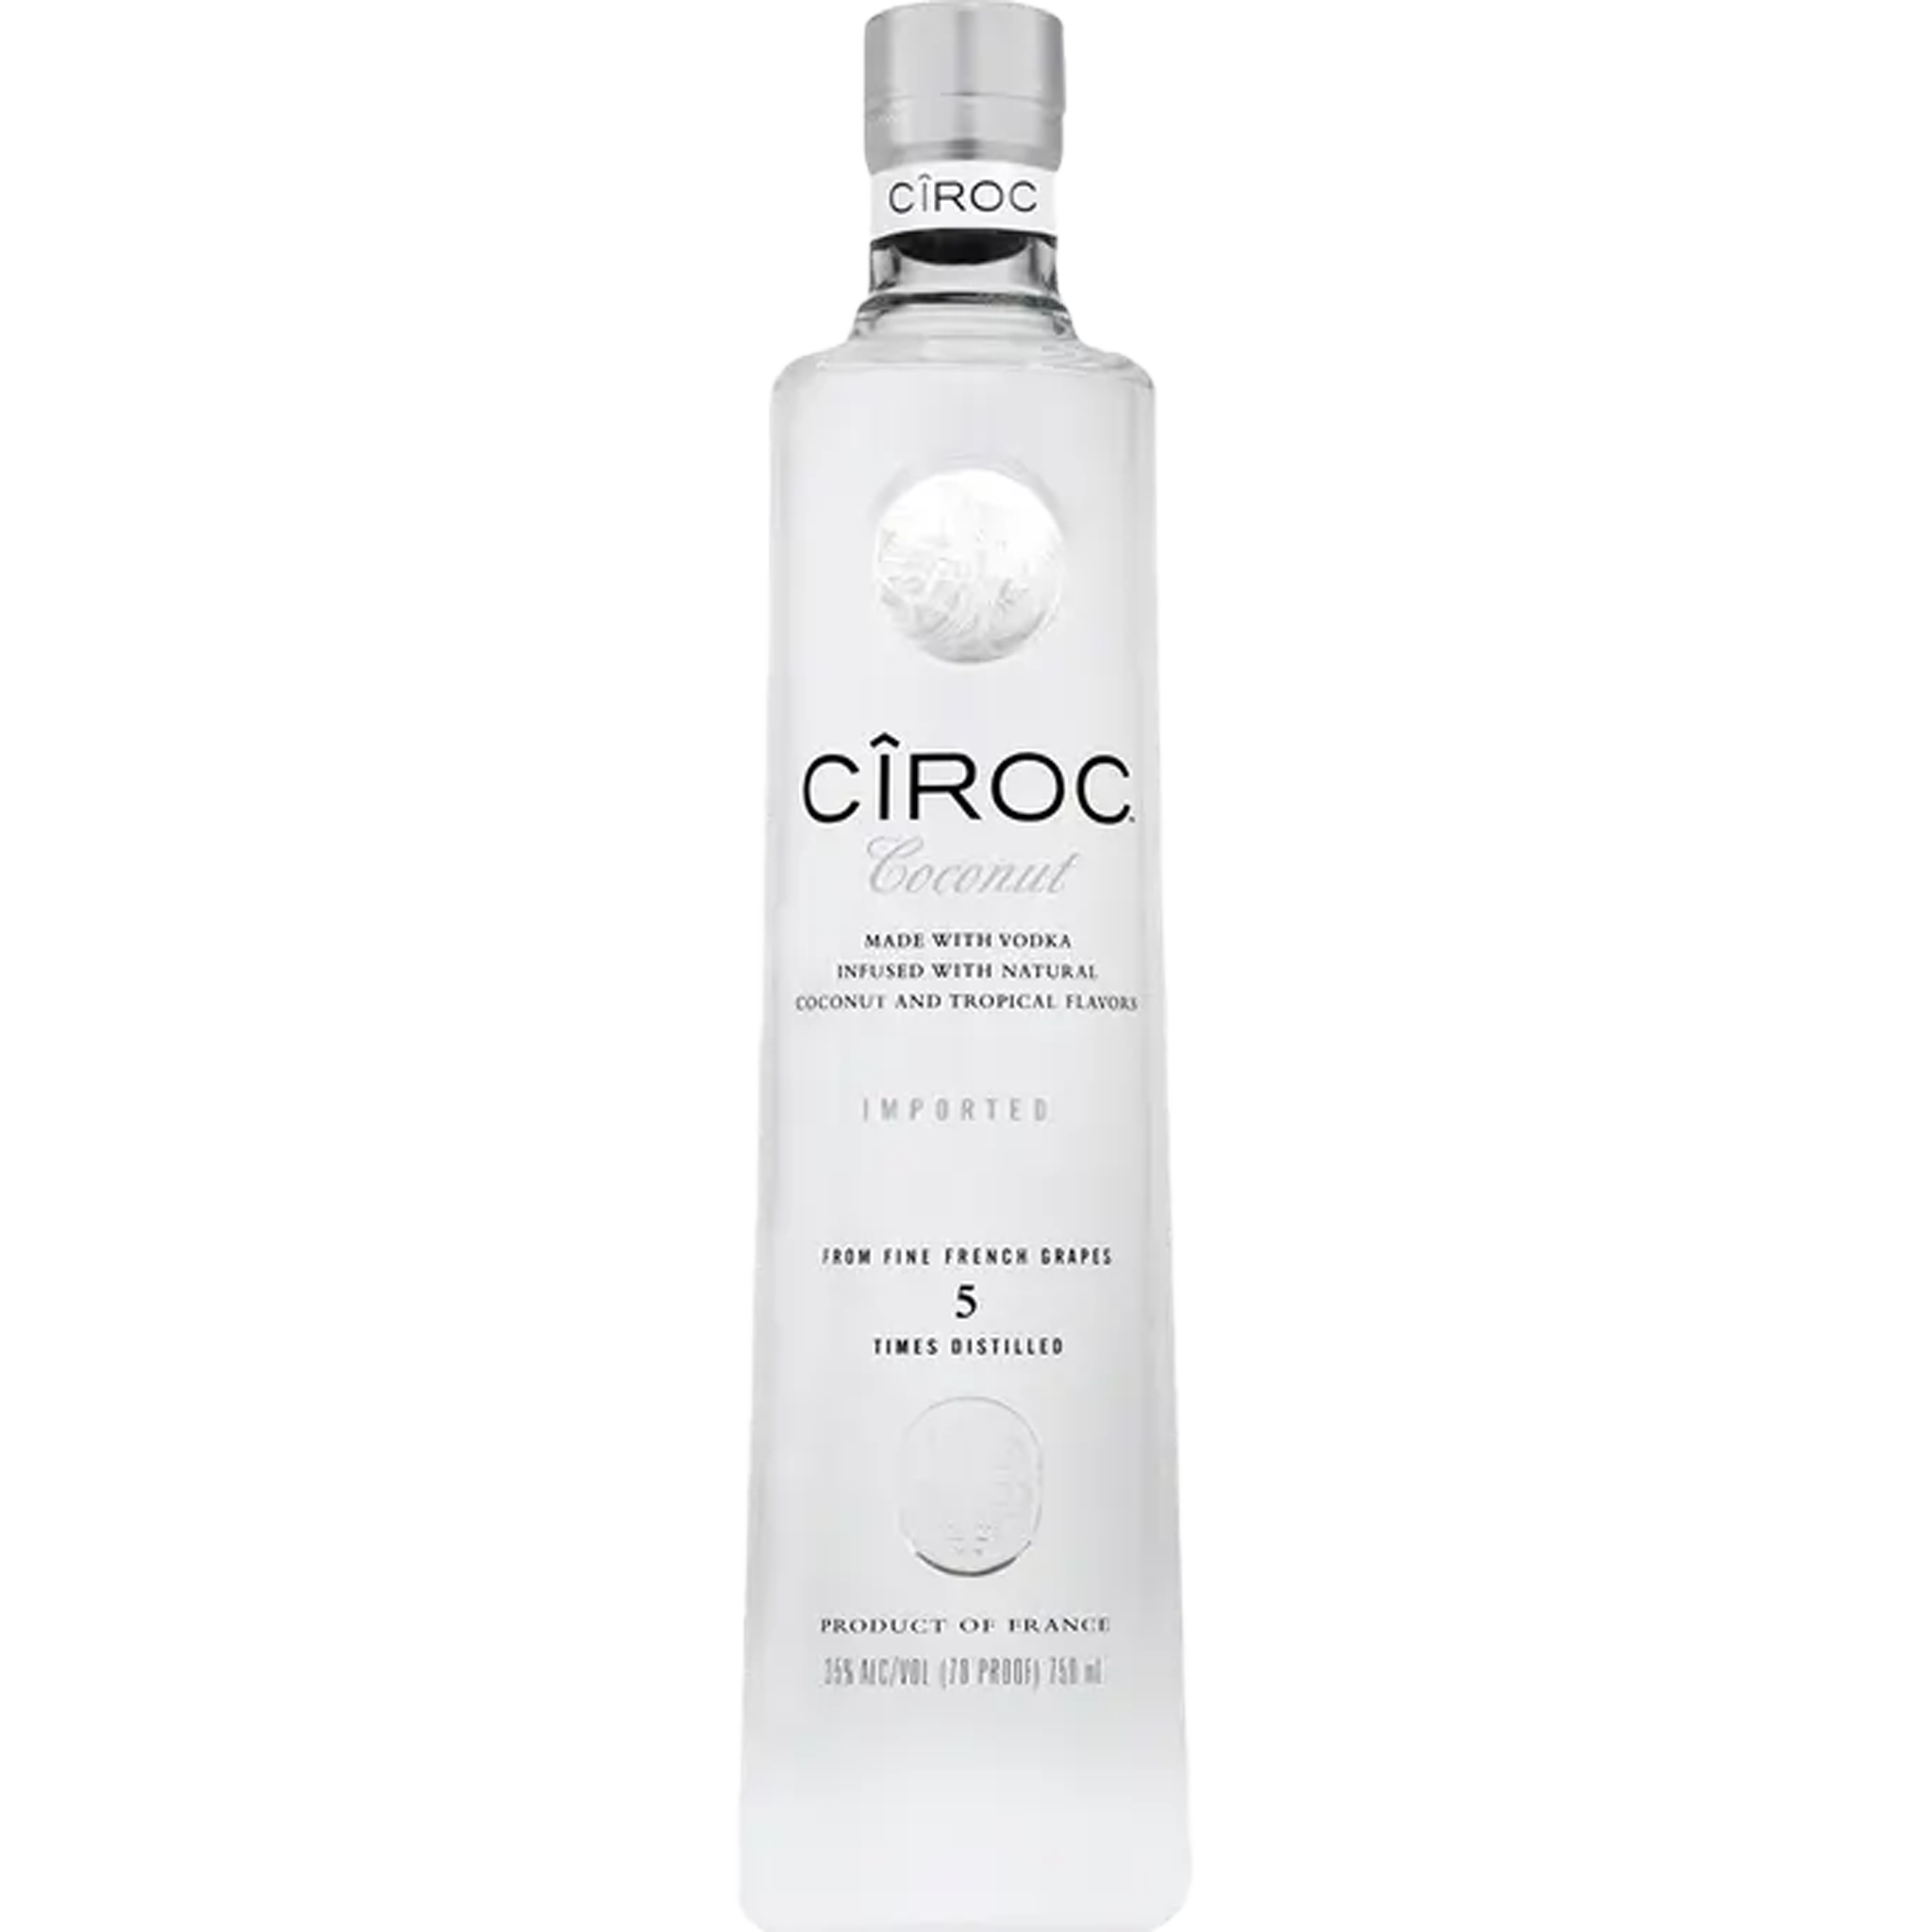 Buy Ciroc Vodka Bundle Online